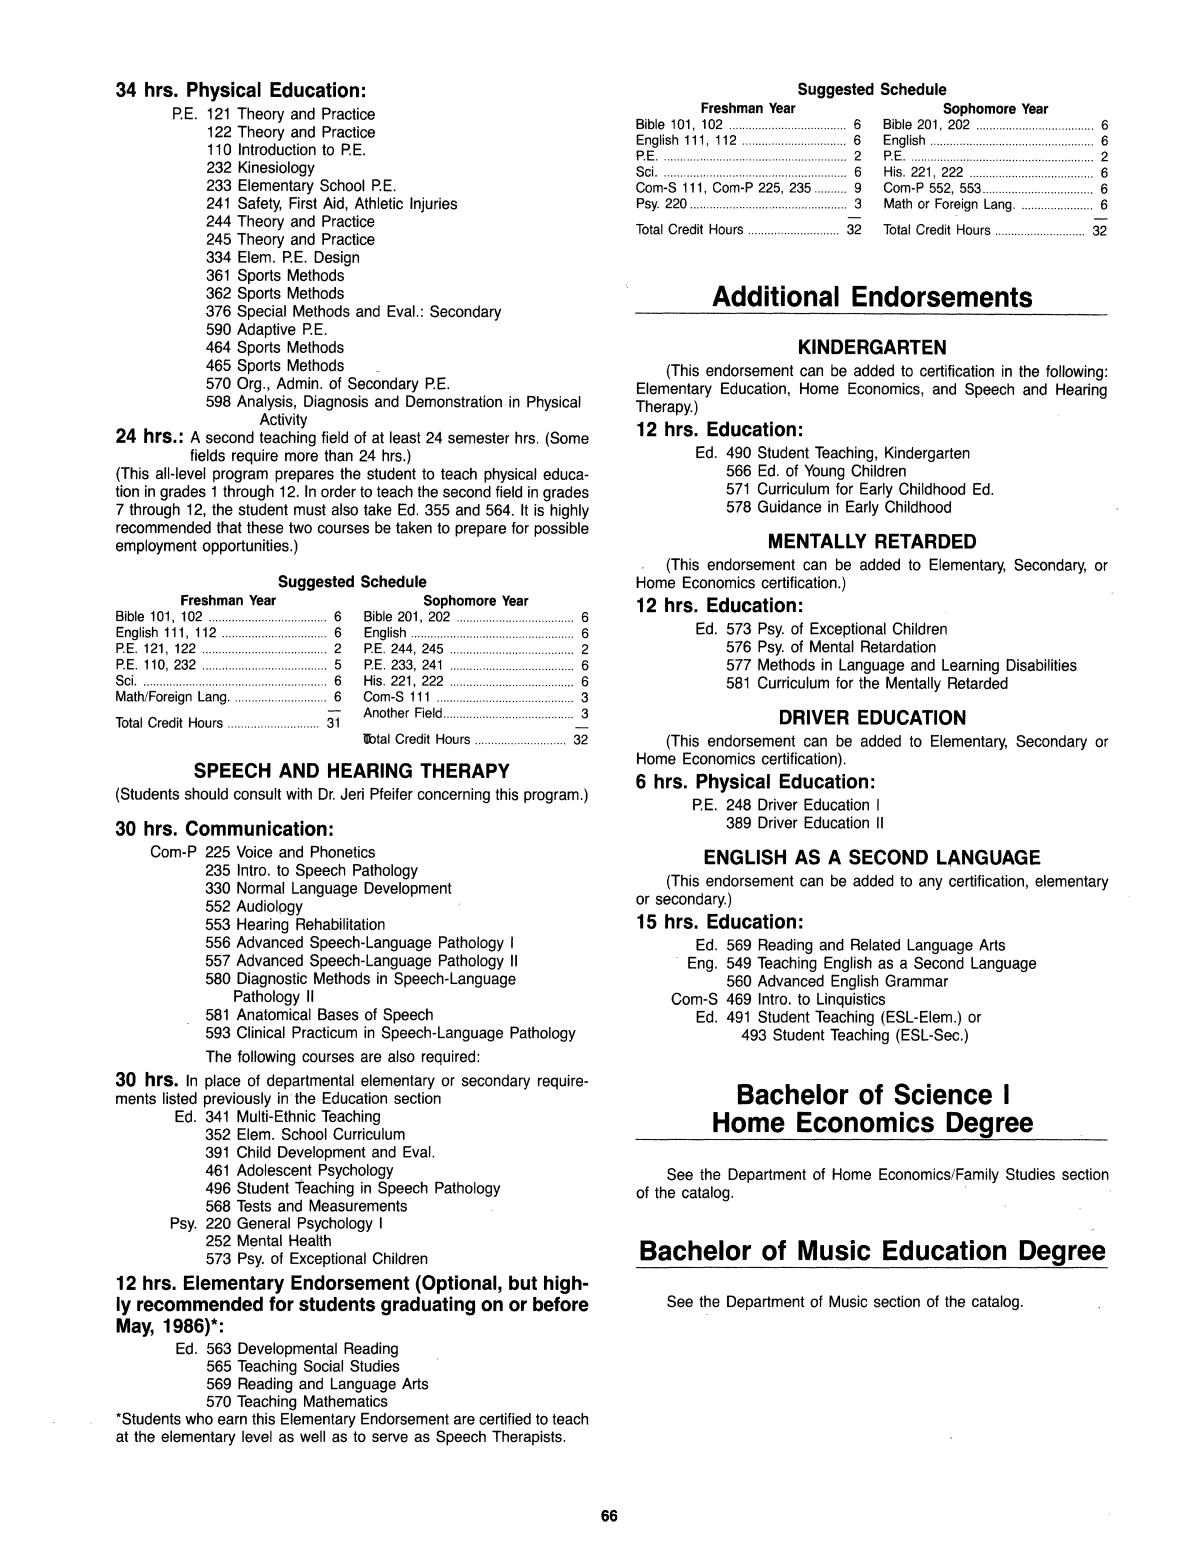 Catalog of Abilene Christian University, 1985-1986
                                                
                                                    66
                                                